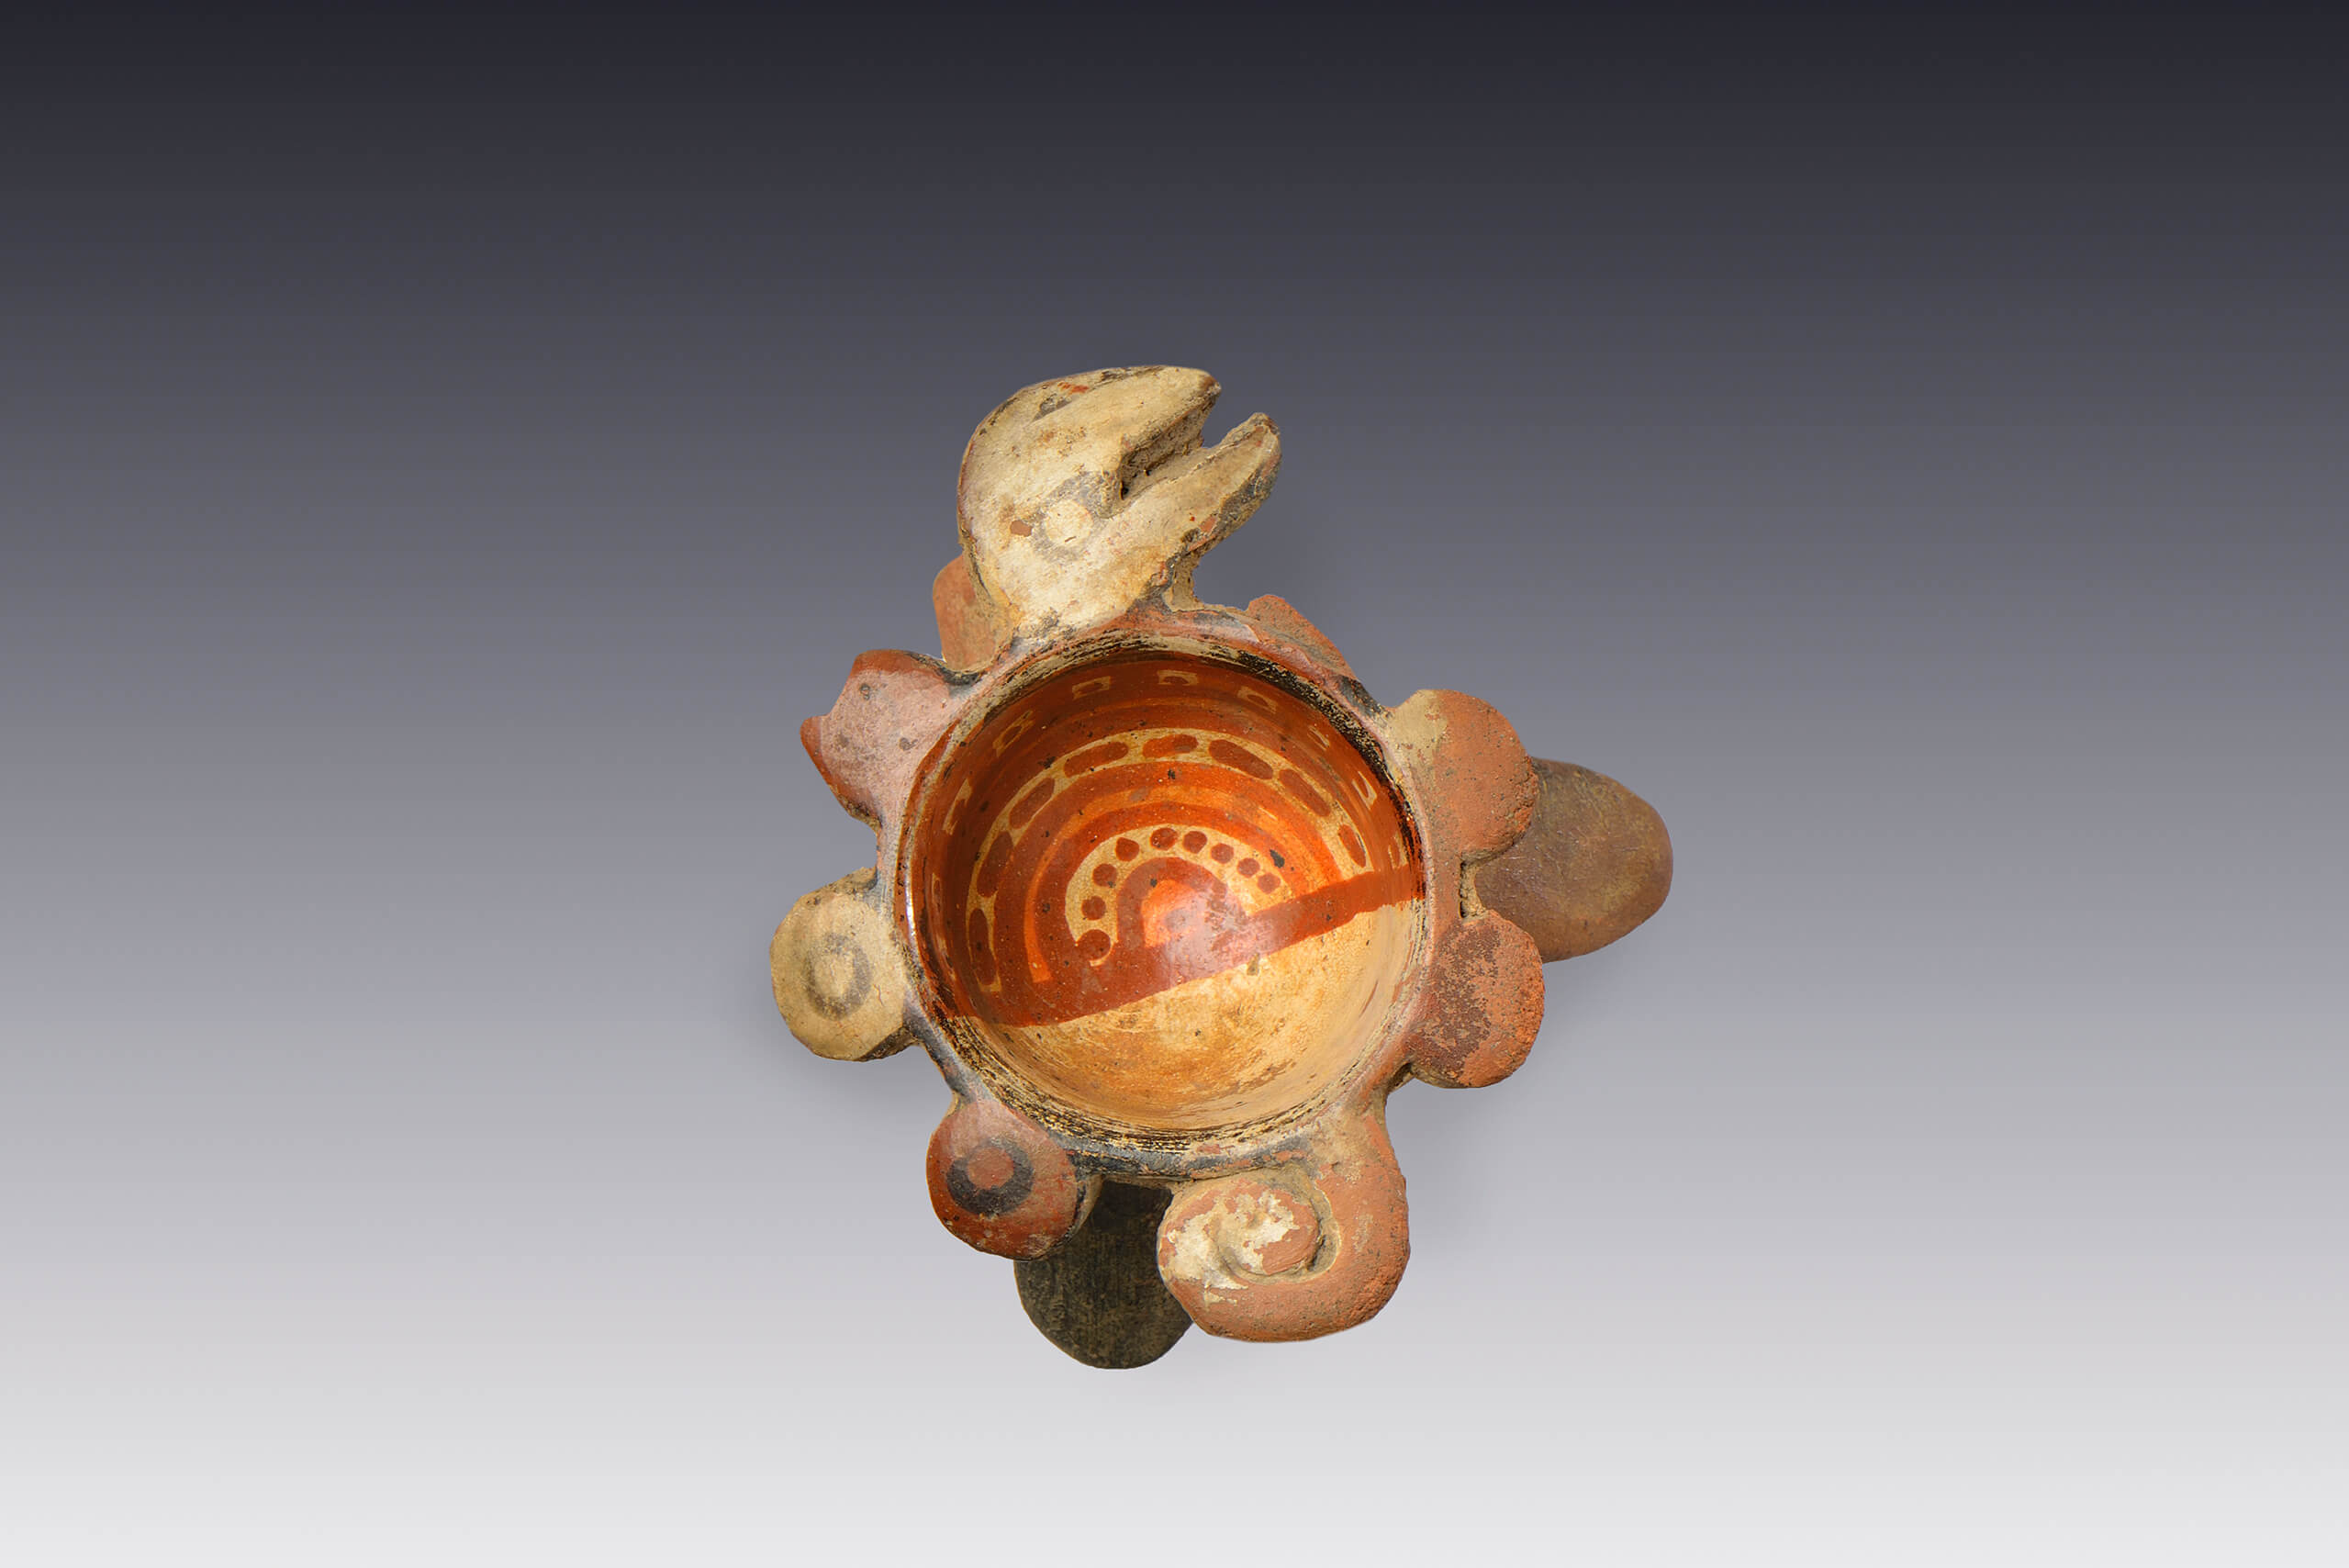 Cuenco miniatura trípode con borde zoomorfo (¿tortuga?) | El México antiguo. Salas de Arte Prehispánico | Museo Amparo, Puebla